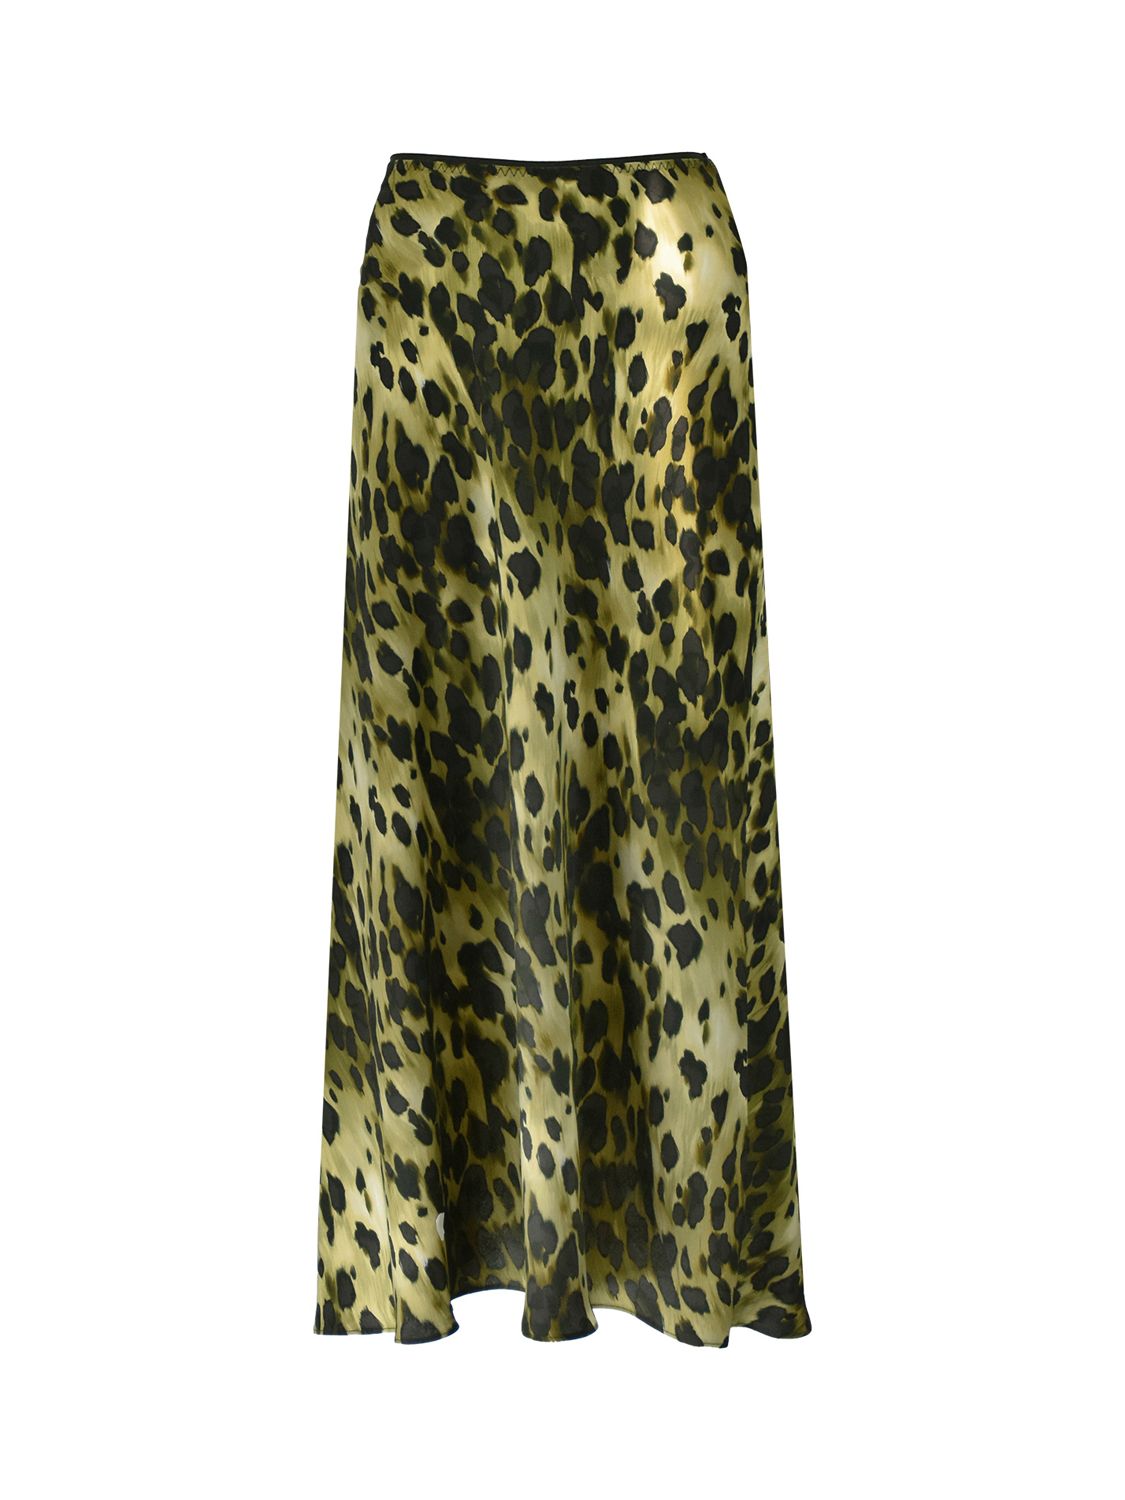 Ro&Zo Soft Leopard Print Bias Cut Midi Skirt, Black/Multi, 6